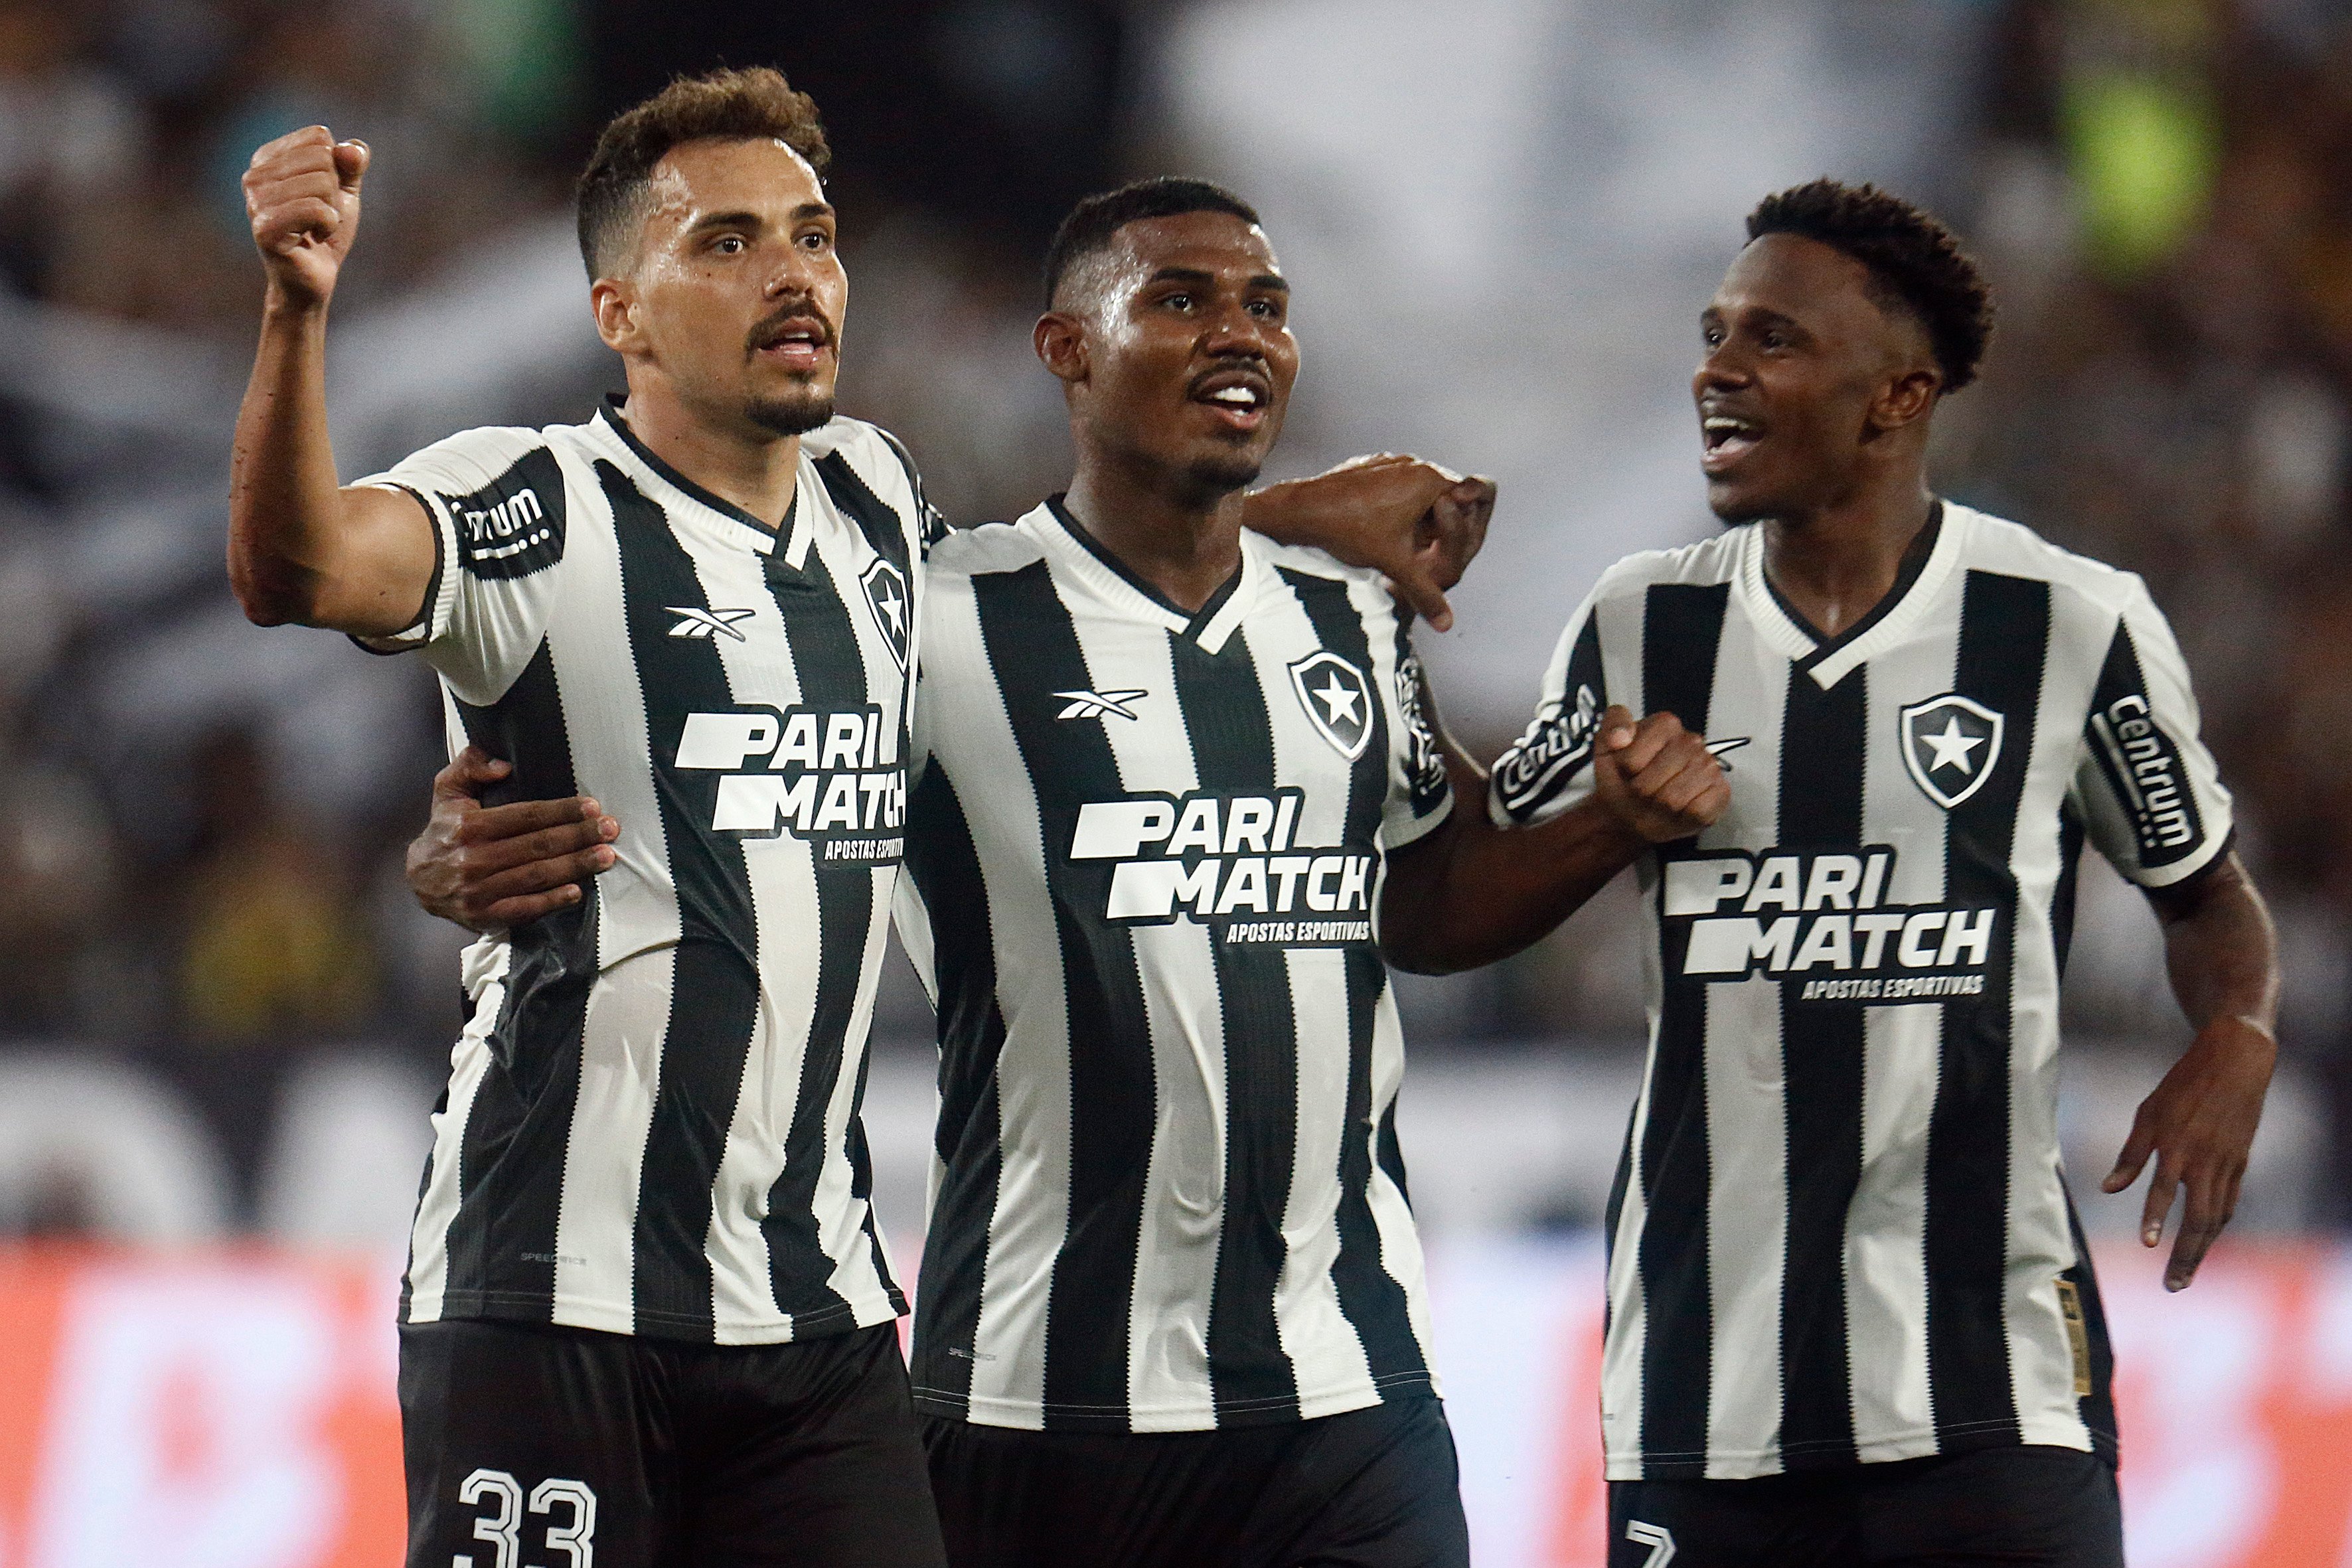 Substituto do artilheiro Tiquinho Soares, machucado, o meia Eduardo atuou mais uma vez na frente e acabou definindo a vantagem mínima para o Botafogo